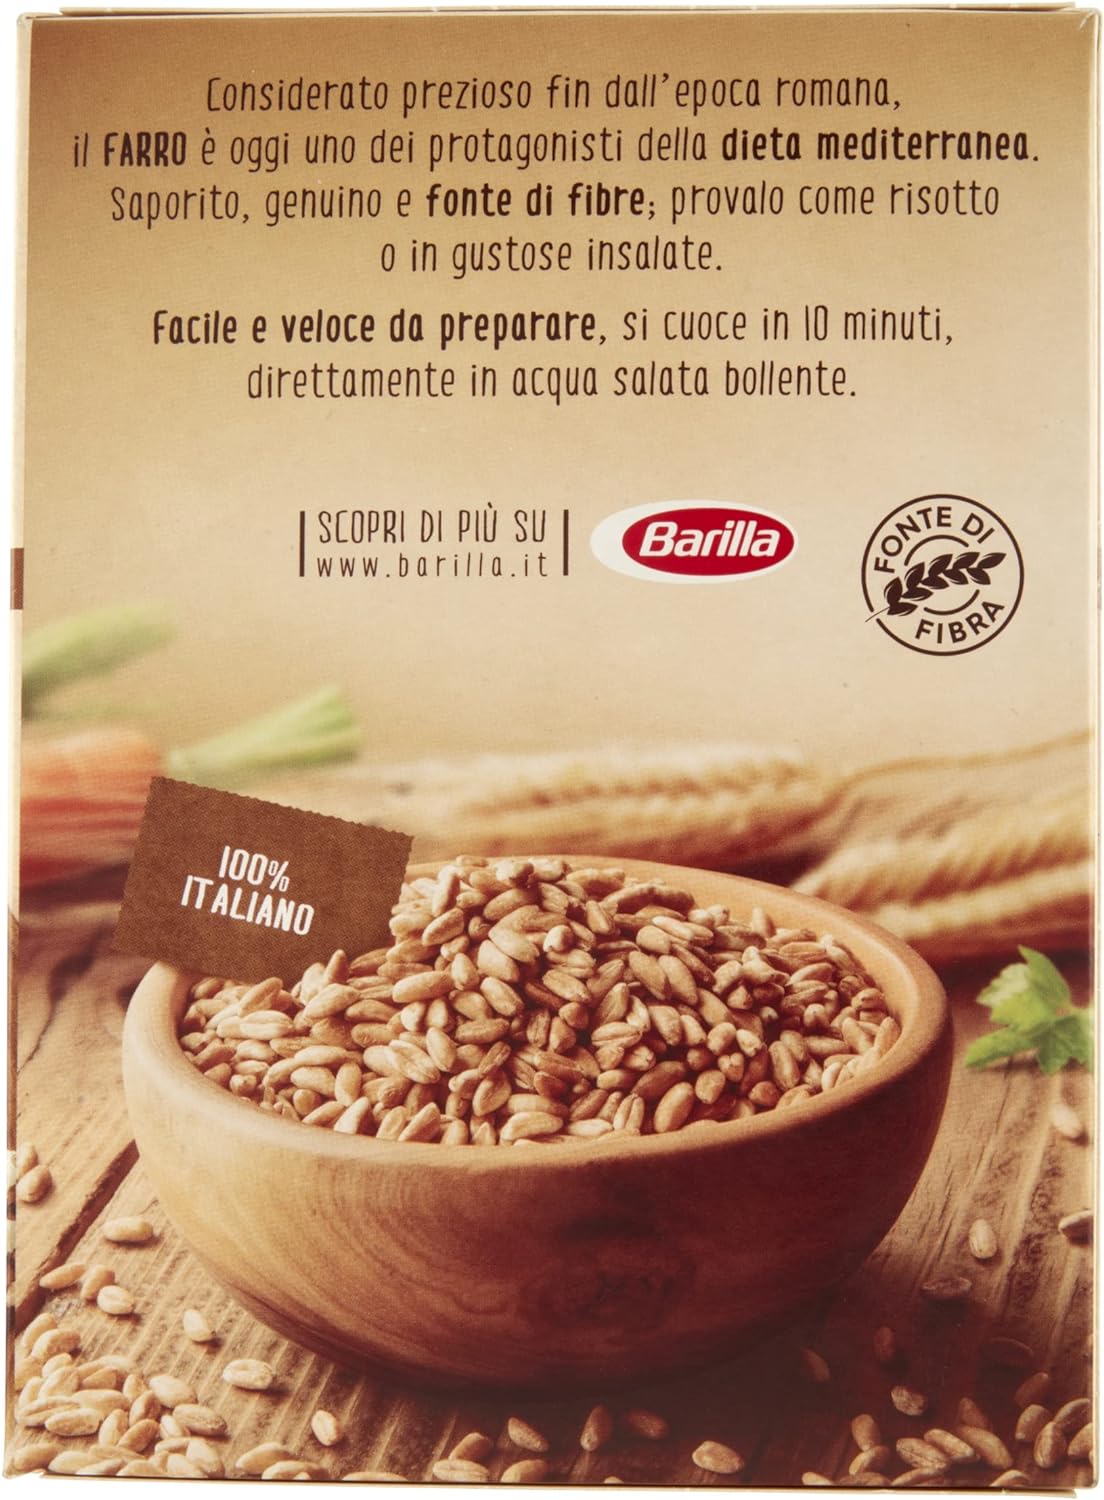 Barilla Cereali Farro in Chicchi, 400g